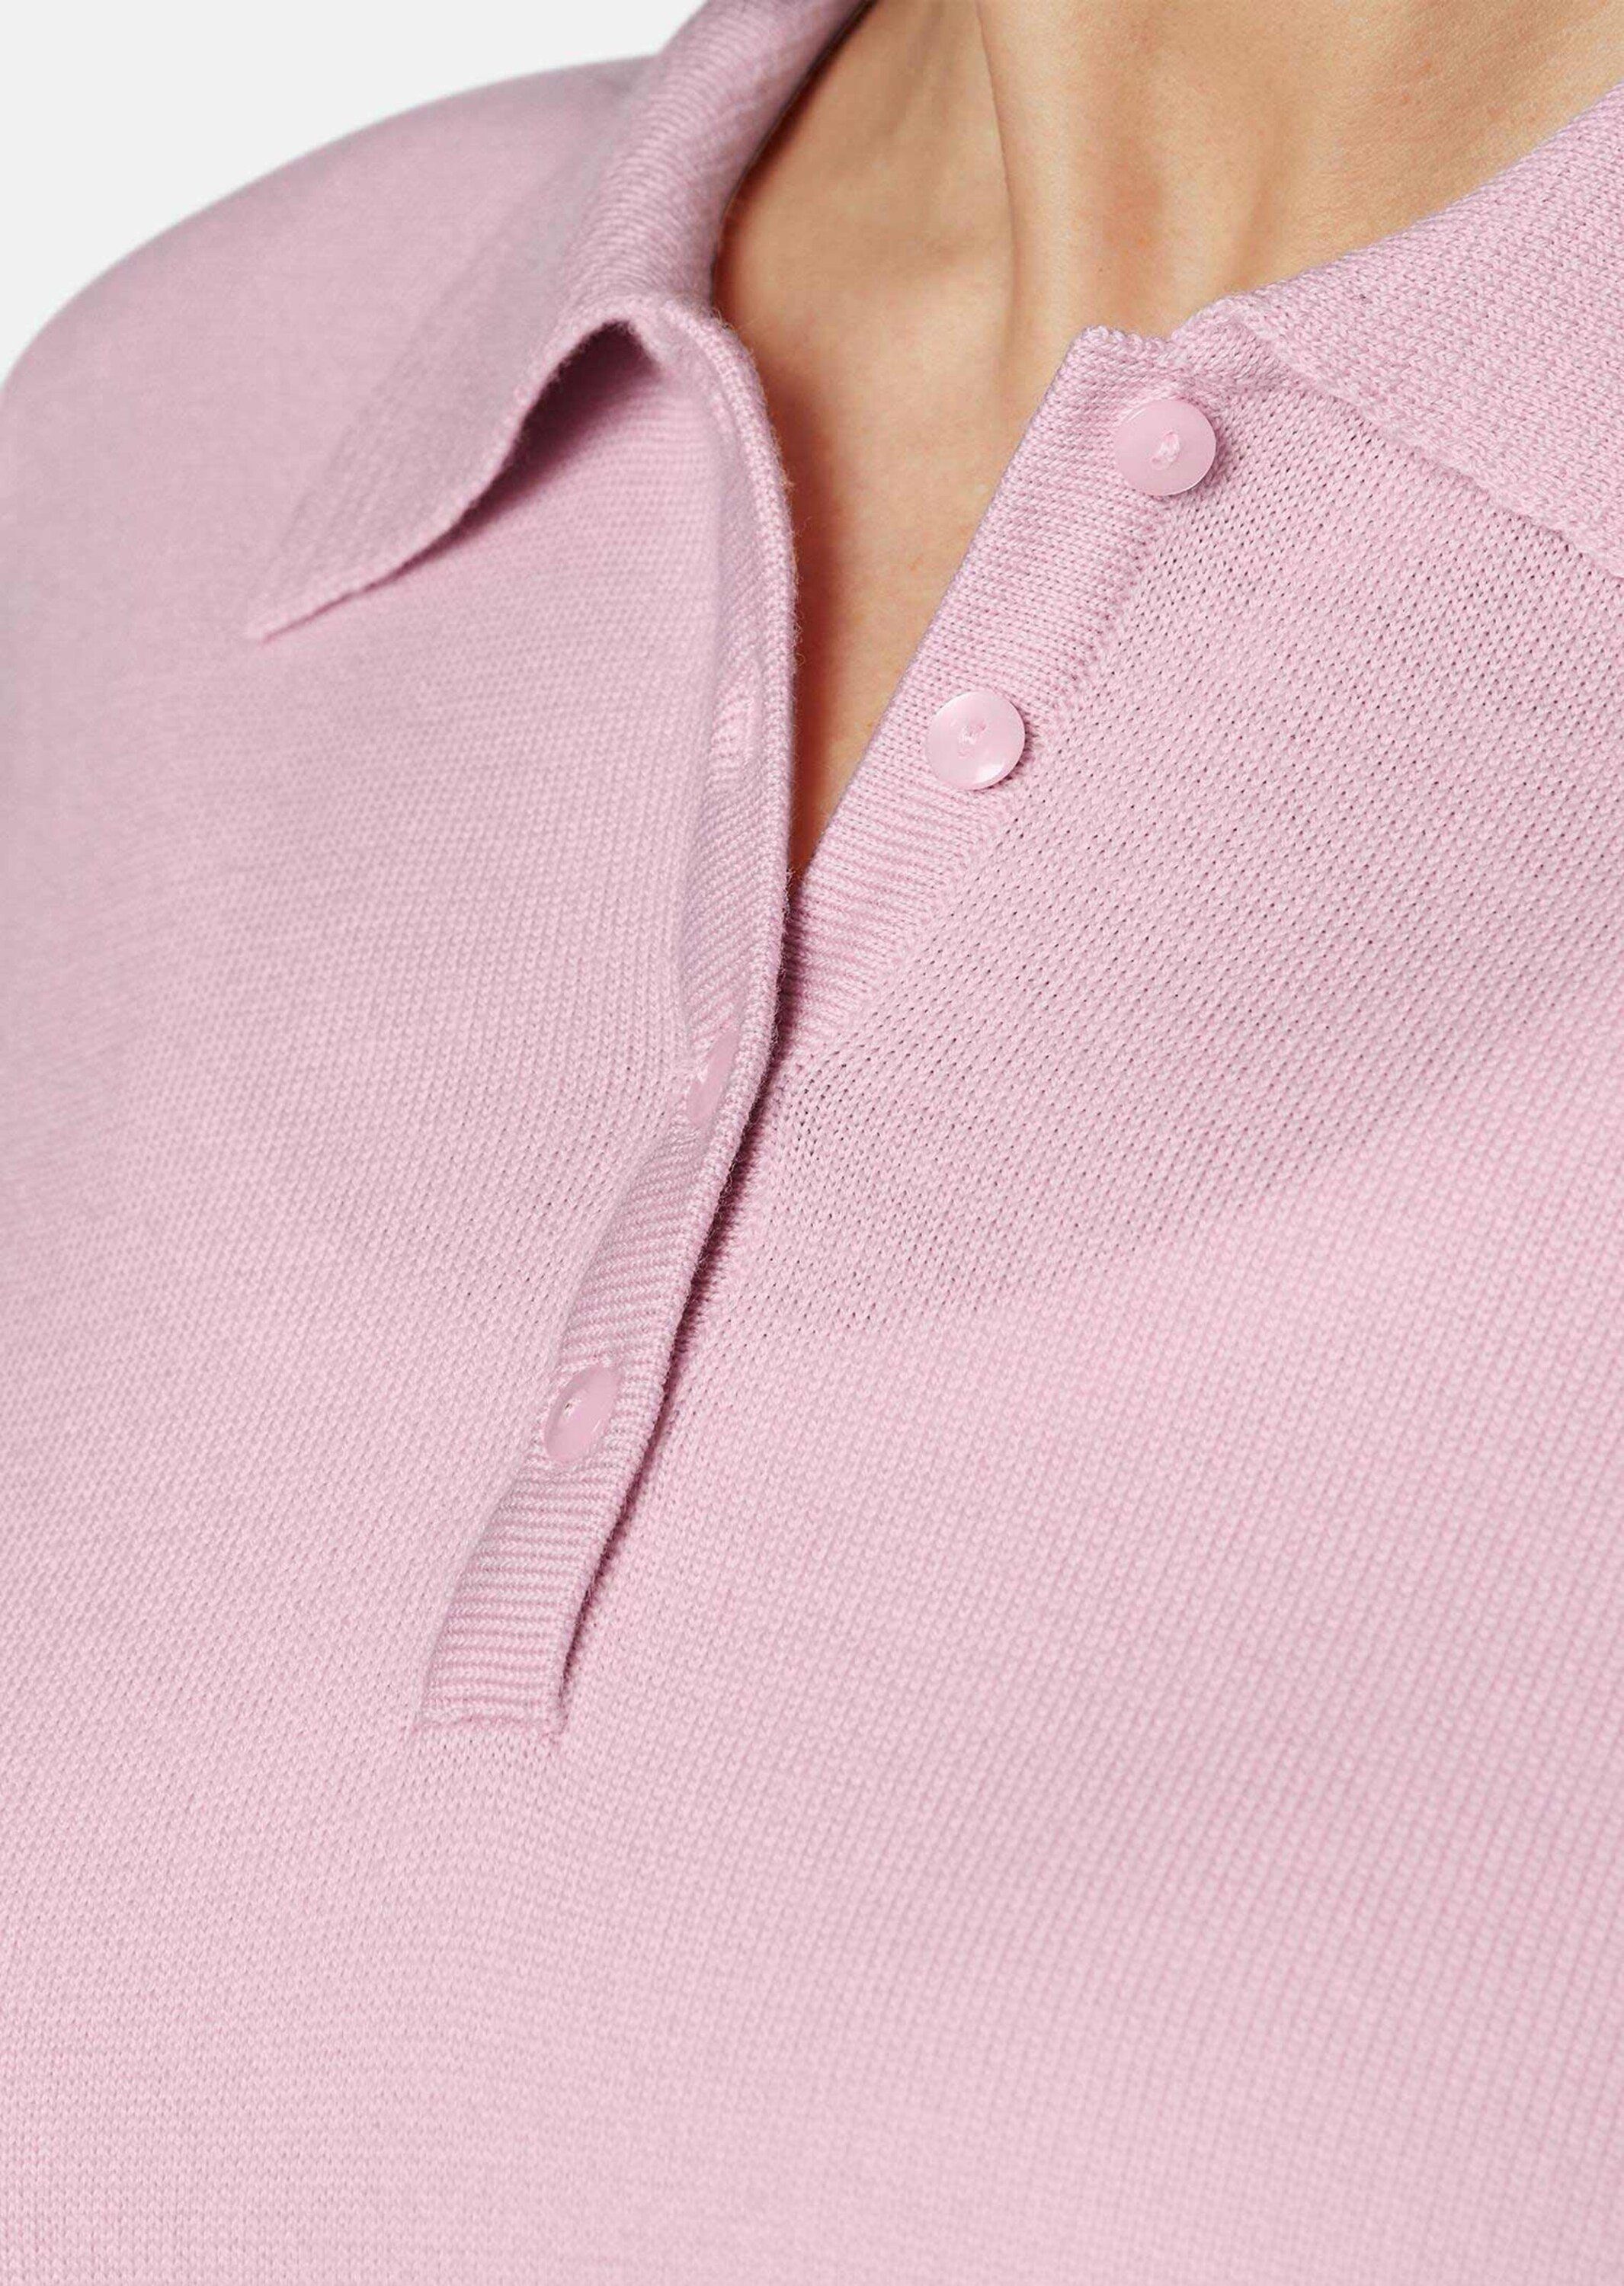 rosa in Strickpullover Qualität Pullover hochwertiger GOLDNER